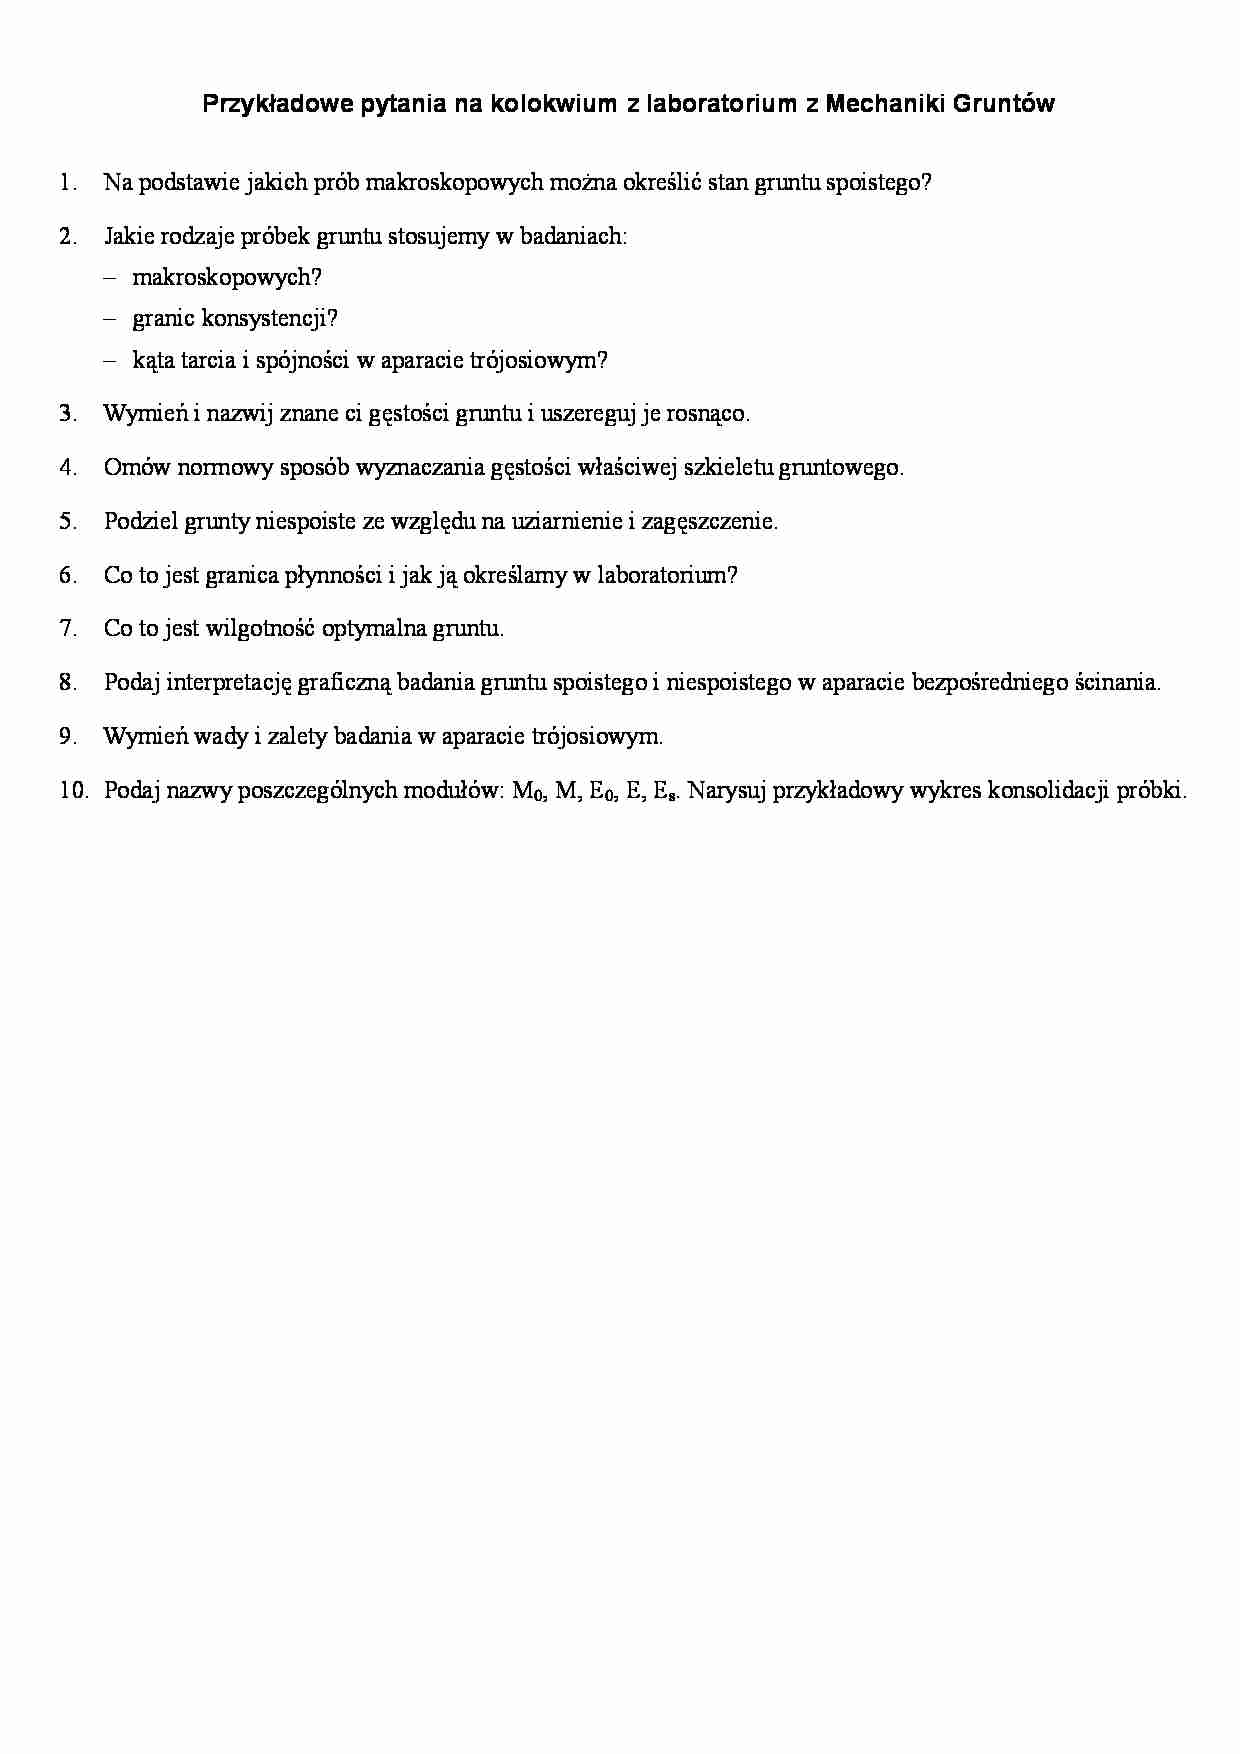 Mechanika gruntów - pytania na kolokwium - strona 1